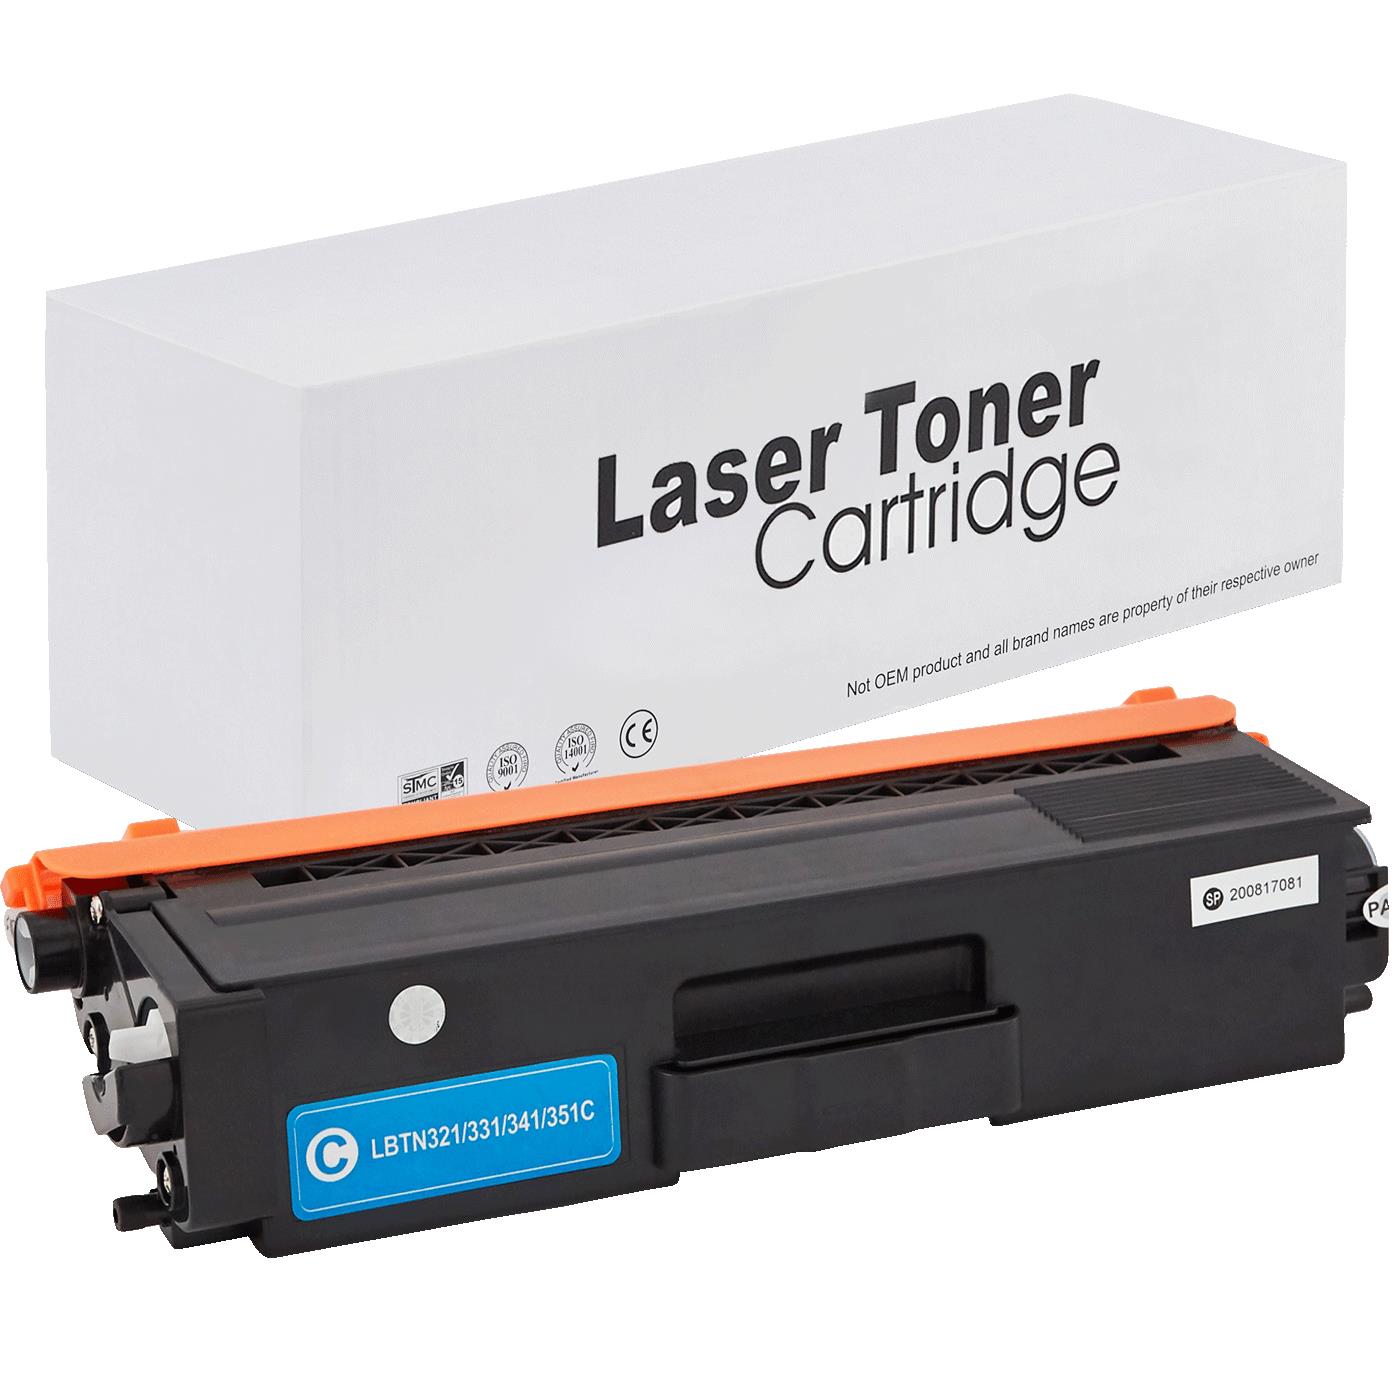 съвместима тонер касета за принтери и печатащи устройства на Brother HL-L 8300 Series Toner BR-321C | TN321C. Ниски цени, прецизно изпълнение, високо качество.